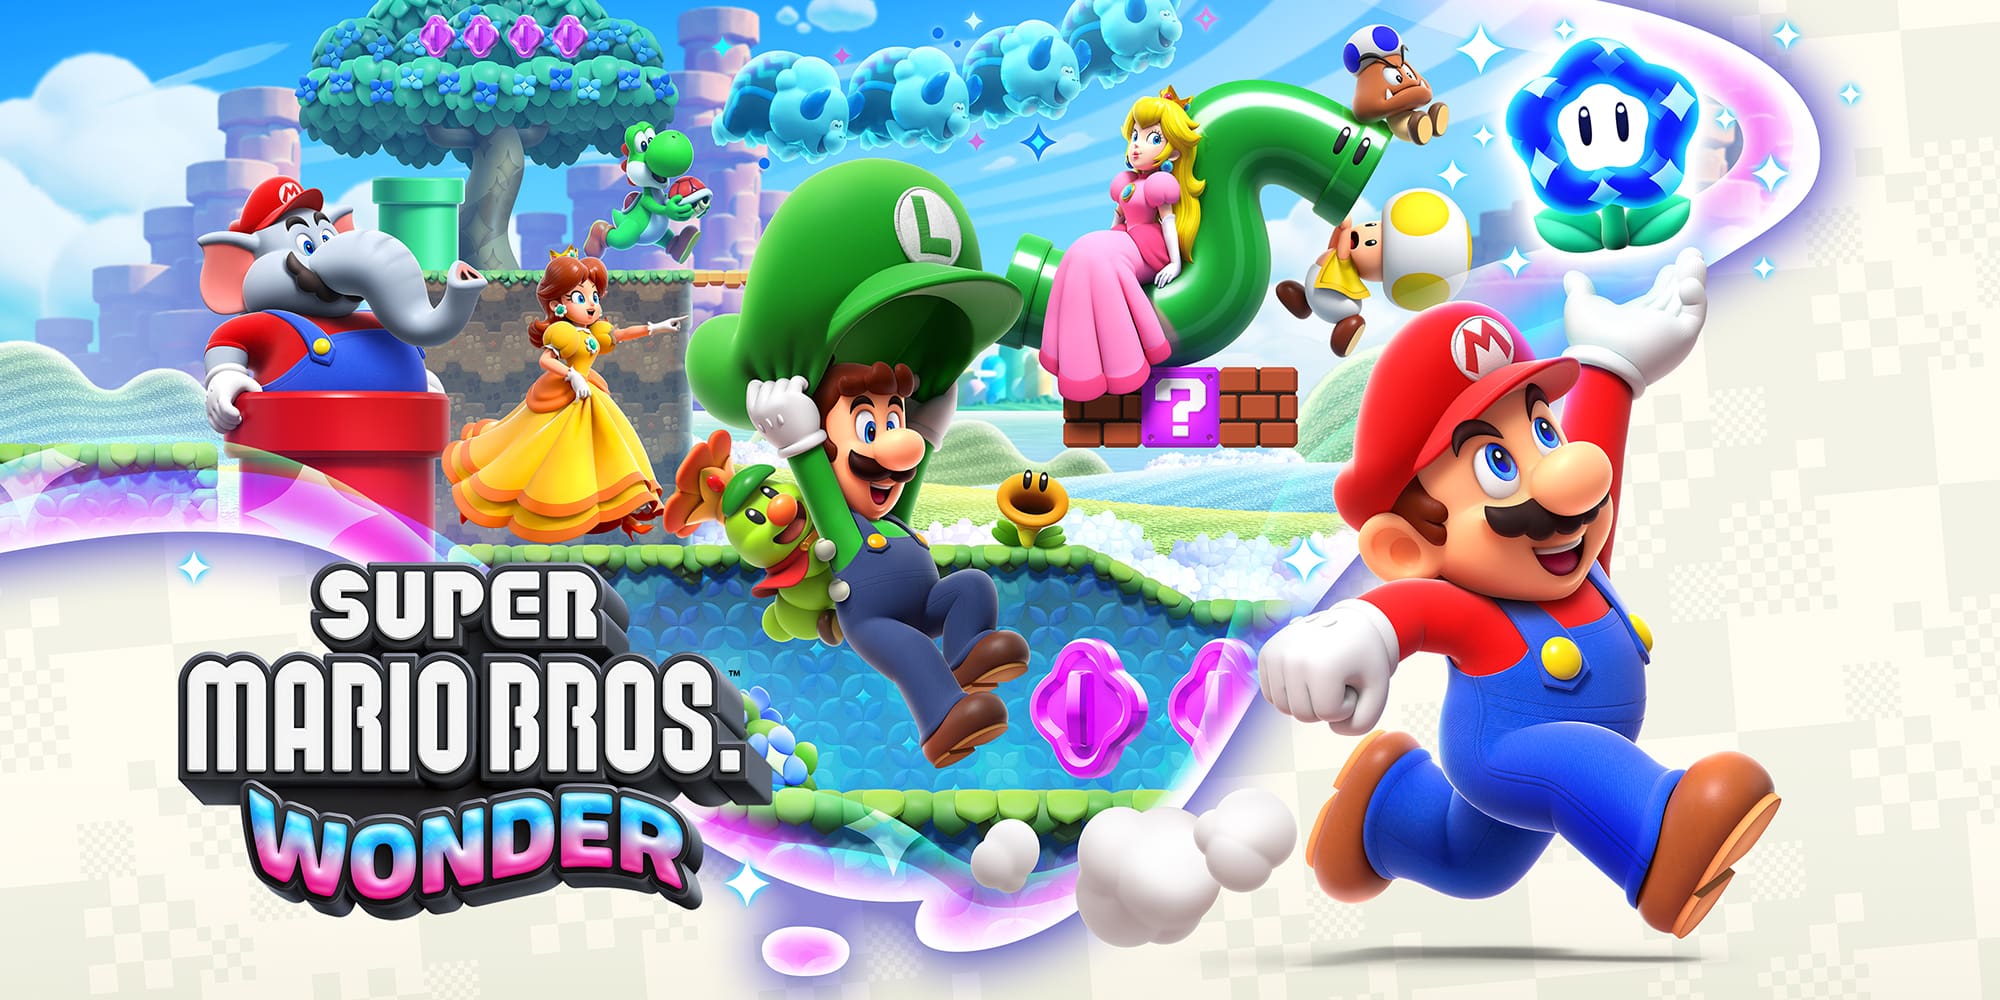 Super Mario Bros Wonder reviews